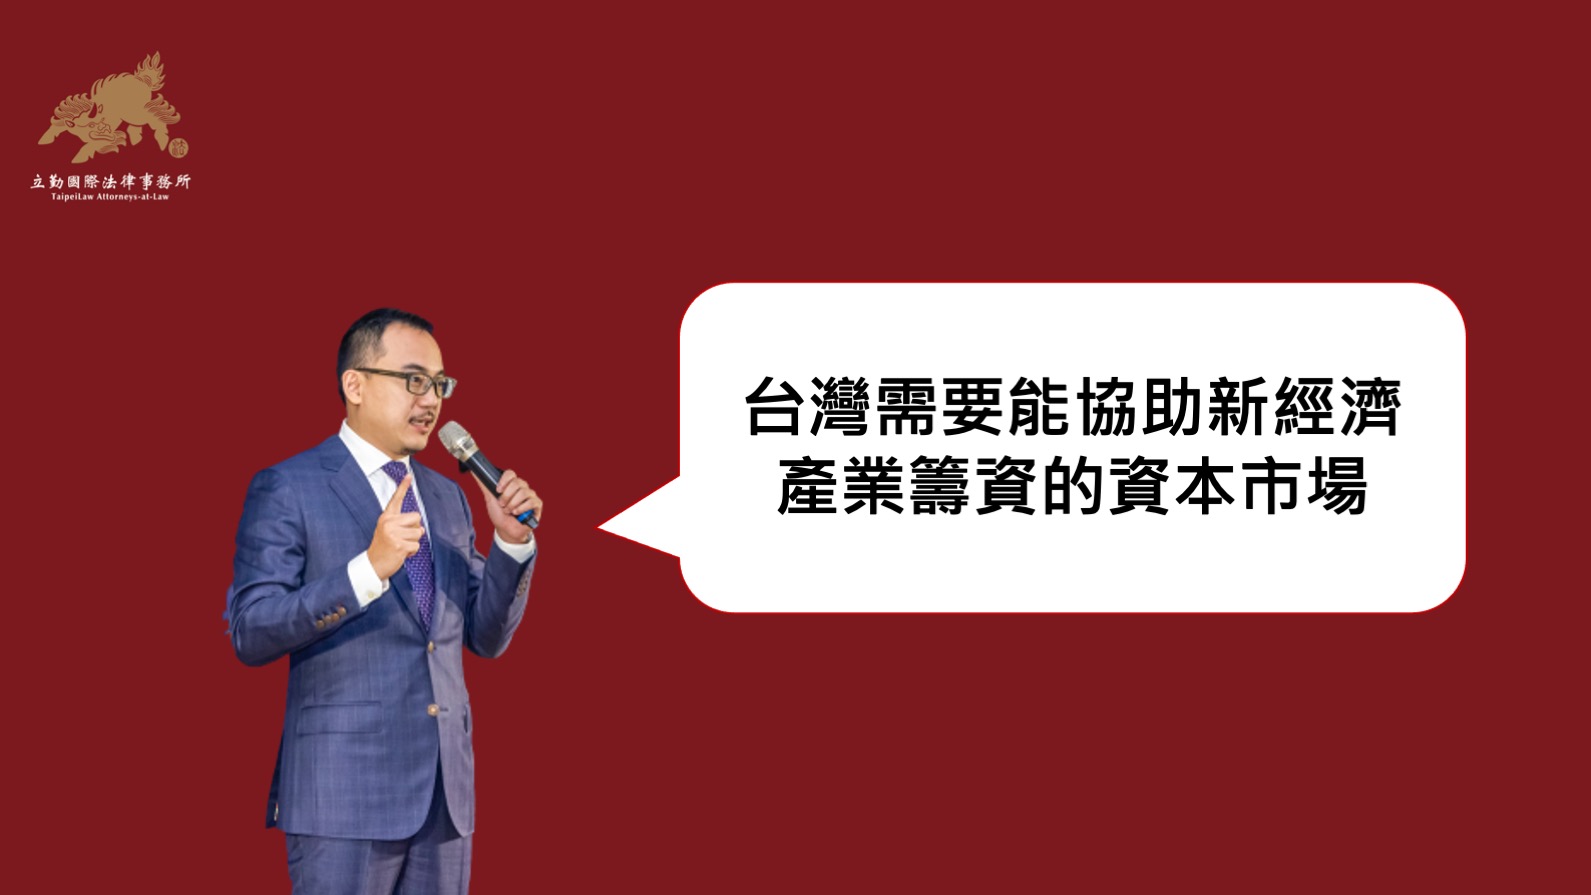 黃沛聲-台灣需要能協助新經濟產業籌資的資本市場